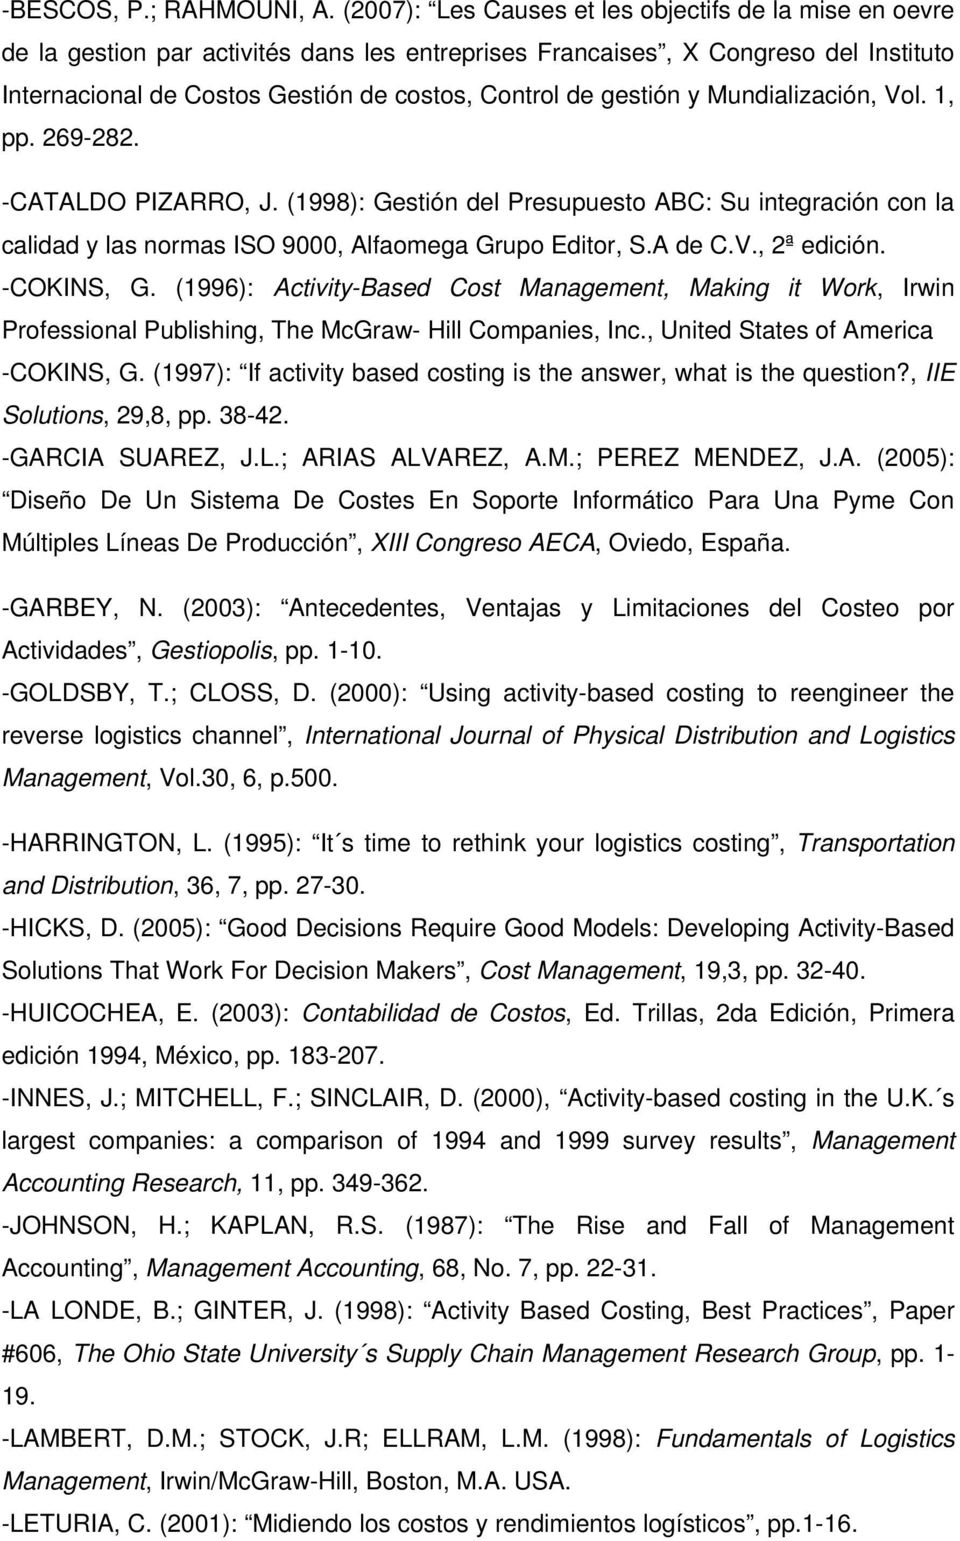 gestión y Mundialización, Vol. 1, pp. 269-282. -CATALDO PIZARRO, J. (1998): Gestión del Presupuesto ABC: Su integración con la calidad y las normas ISO 9000, Alfaomega Grupo Editor, S.A de C.V., 2ª edición.